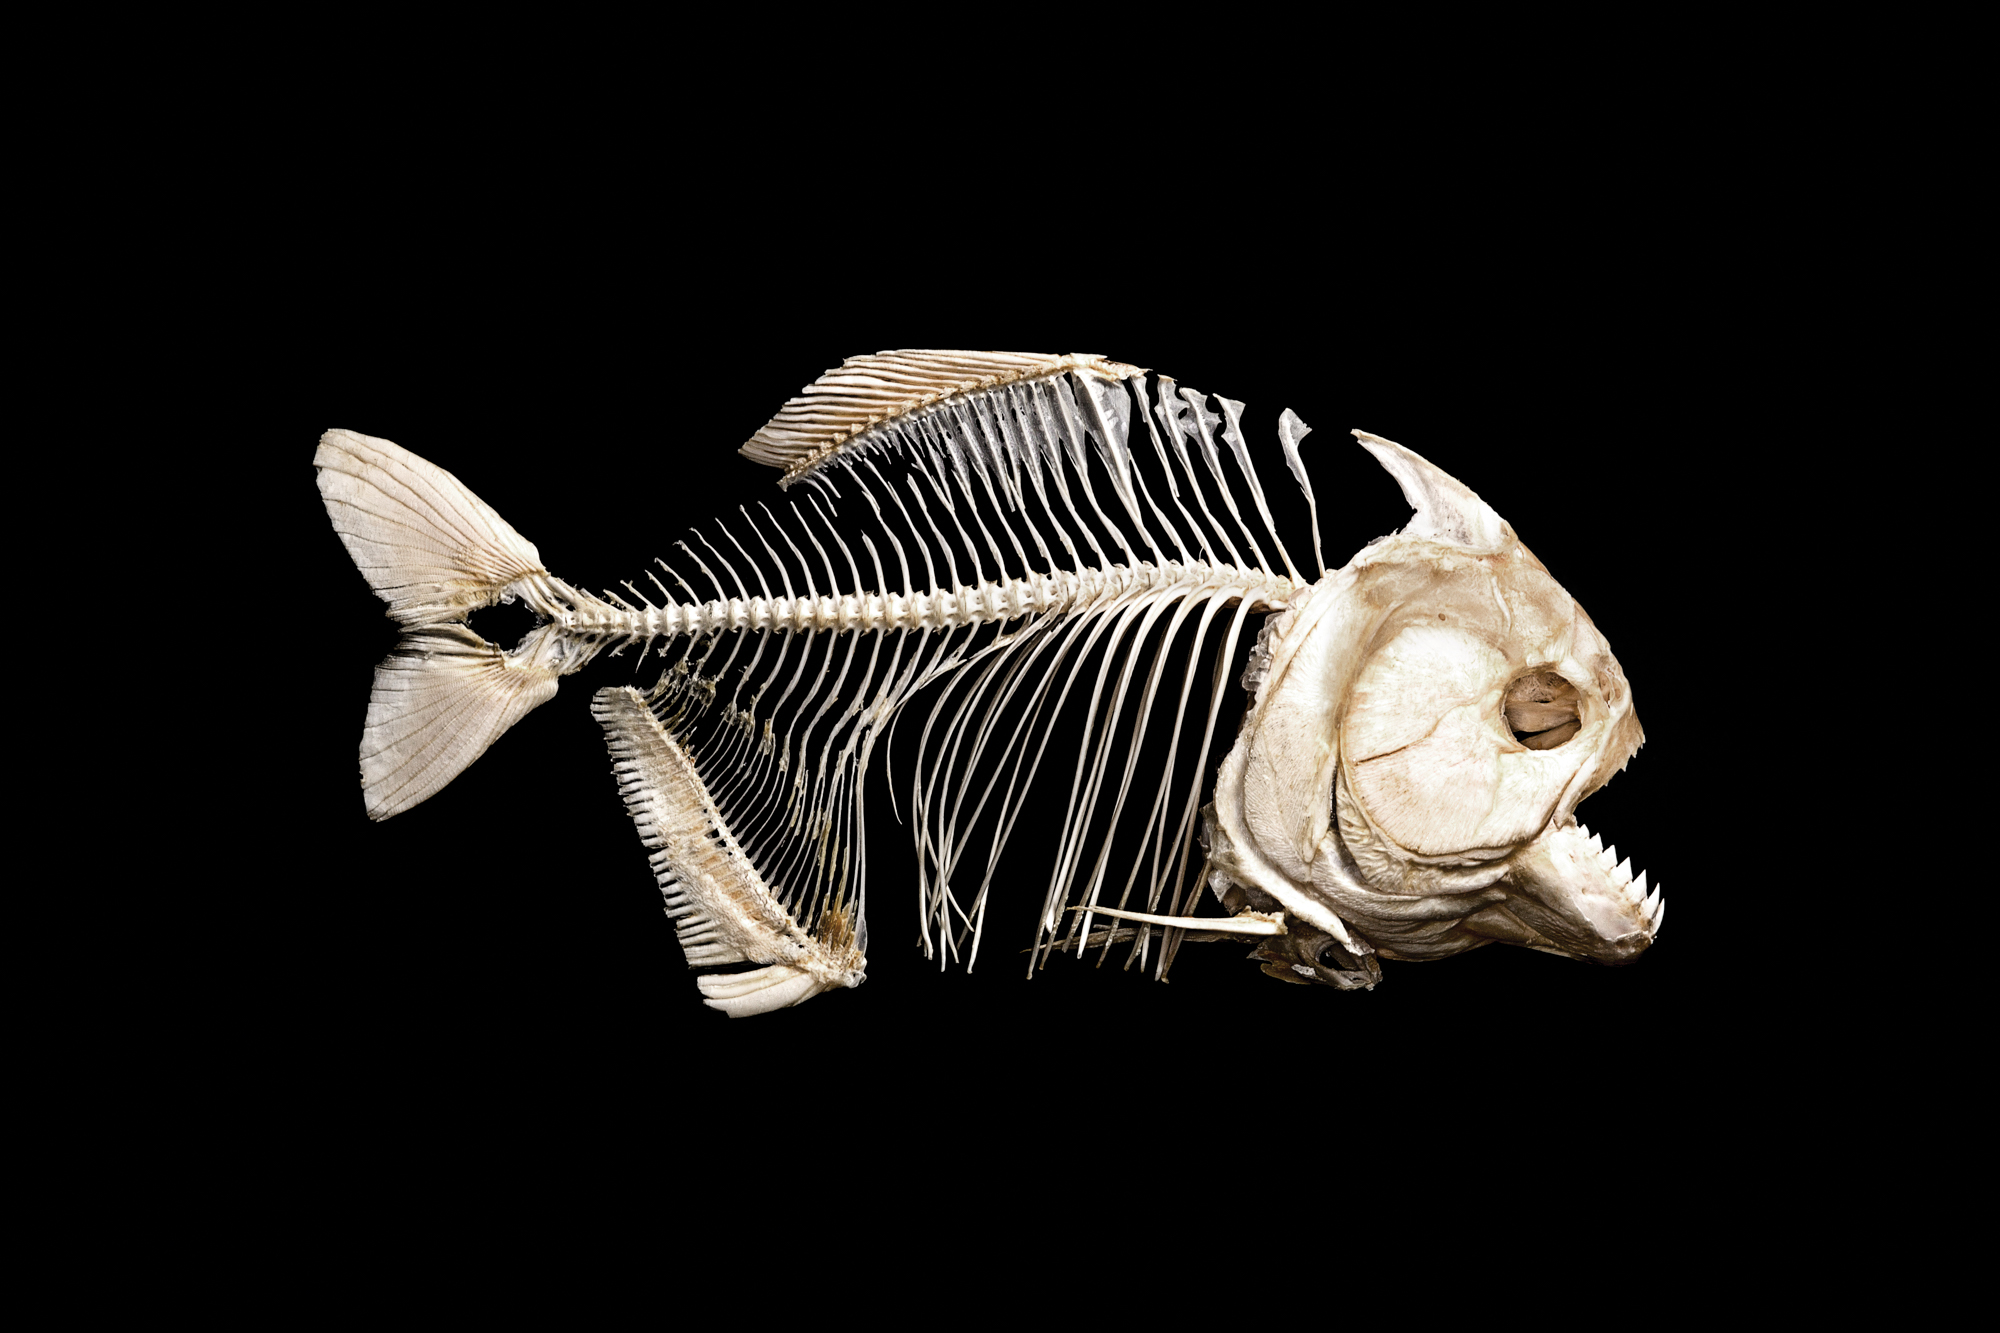 A piranha skeleton on black.